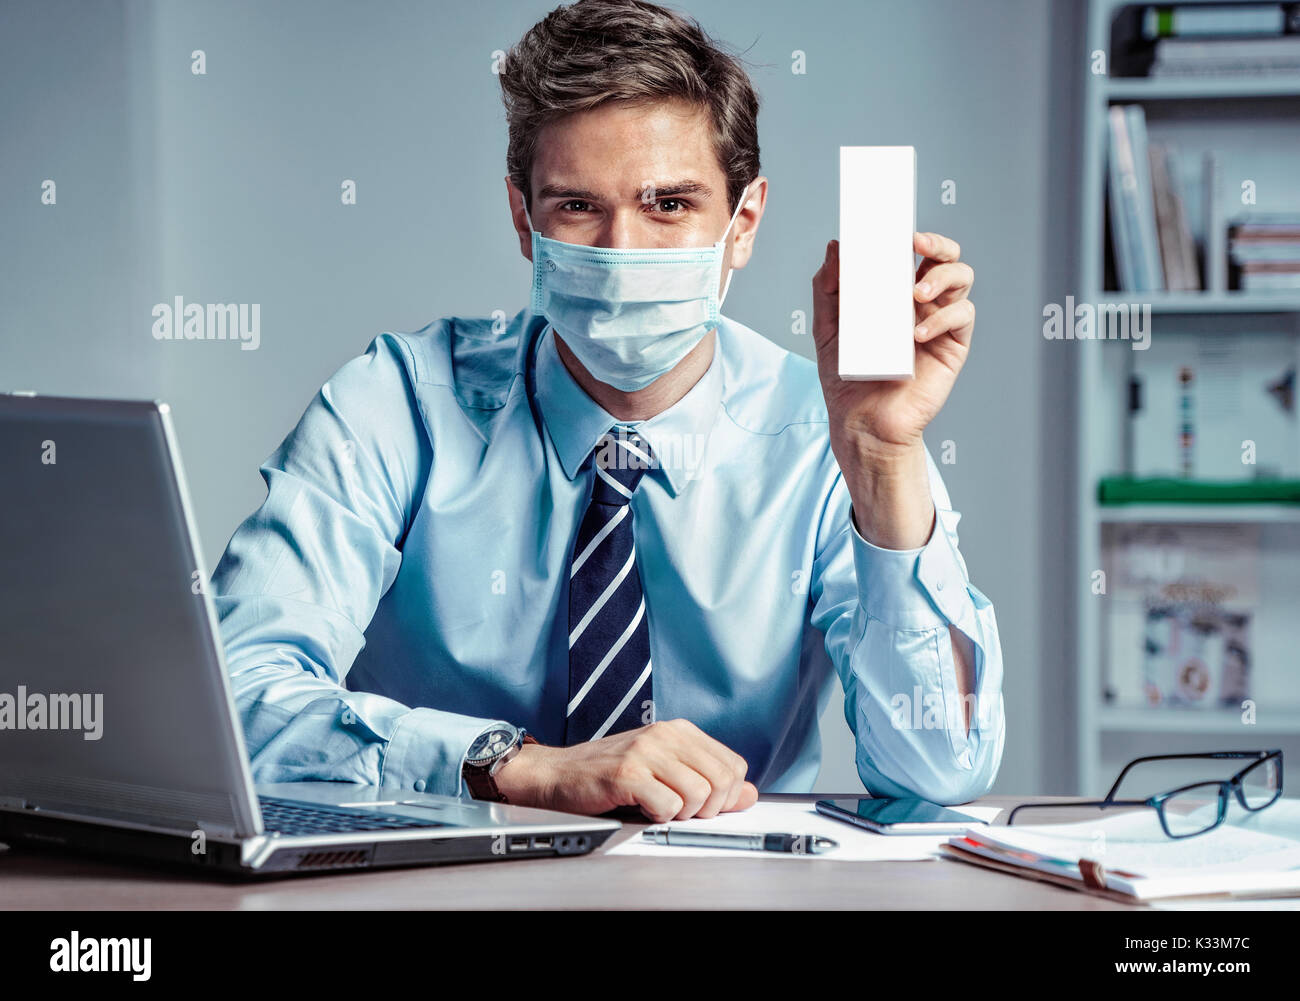 Lavoratore sano in ufficio azienda white box o medicina. Foto di un uomo che indossa la maschera di protezione contro le malattie infettive e l'influenza. Business e hea Foto Stock